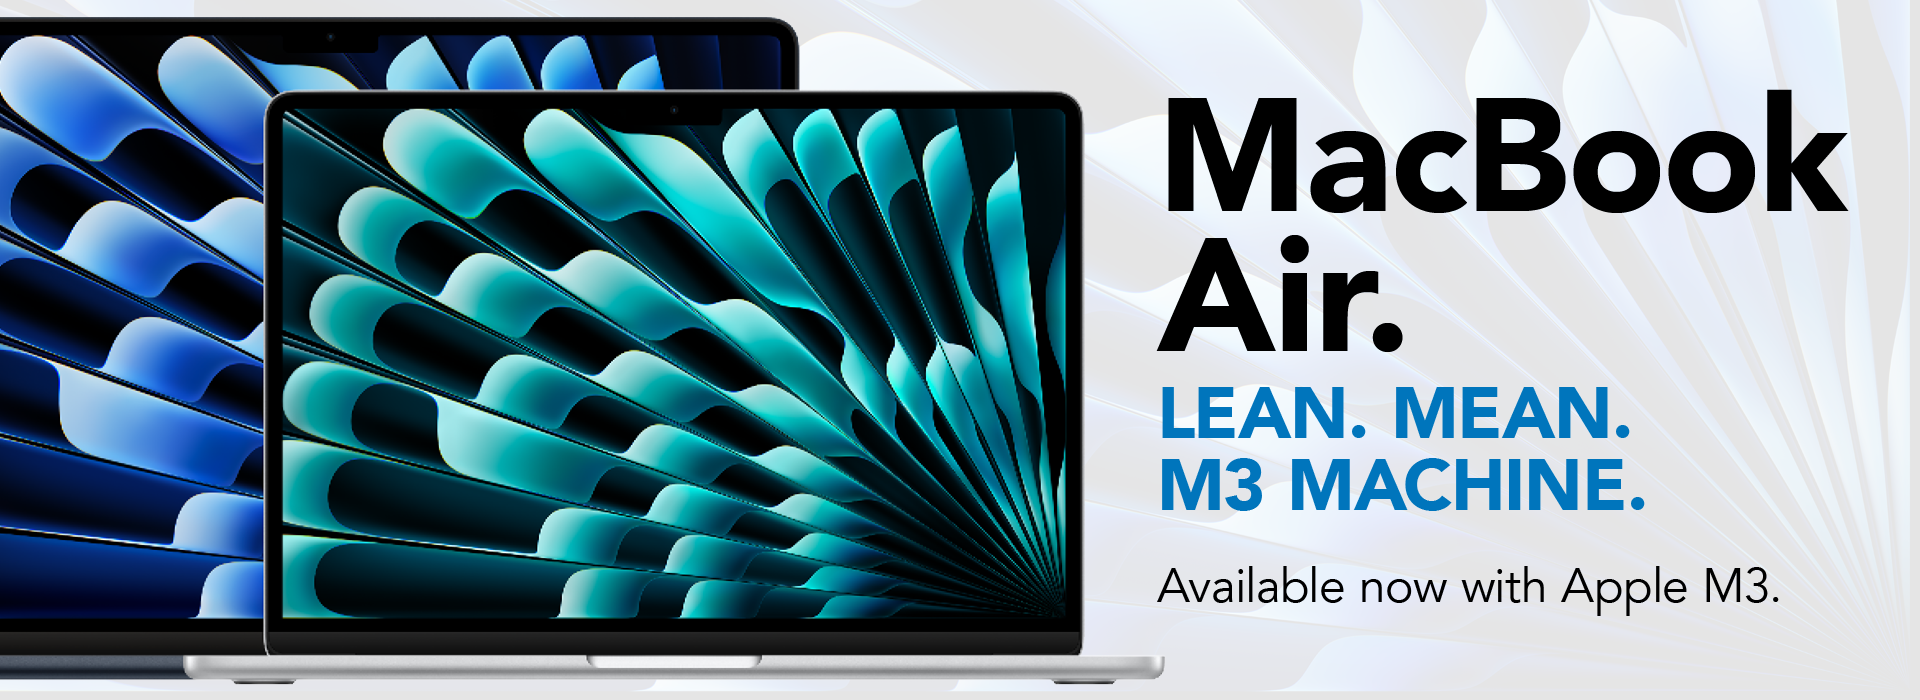 New MacBook Air M3